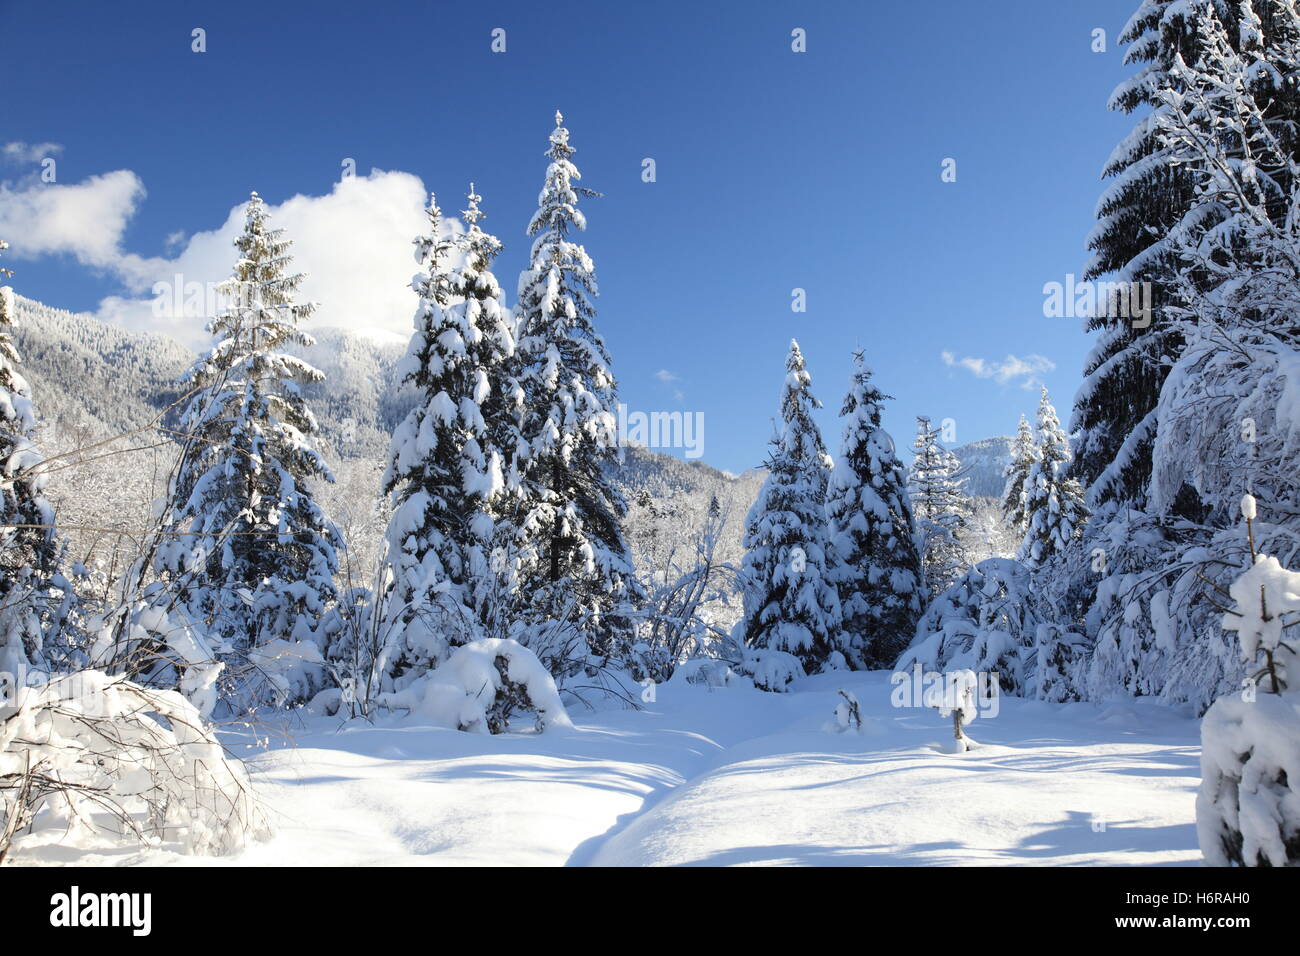 Alberi ad albero inverno paesaggio innevato paesaggio neve natura campagna shine brilla luminosa ...